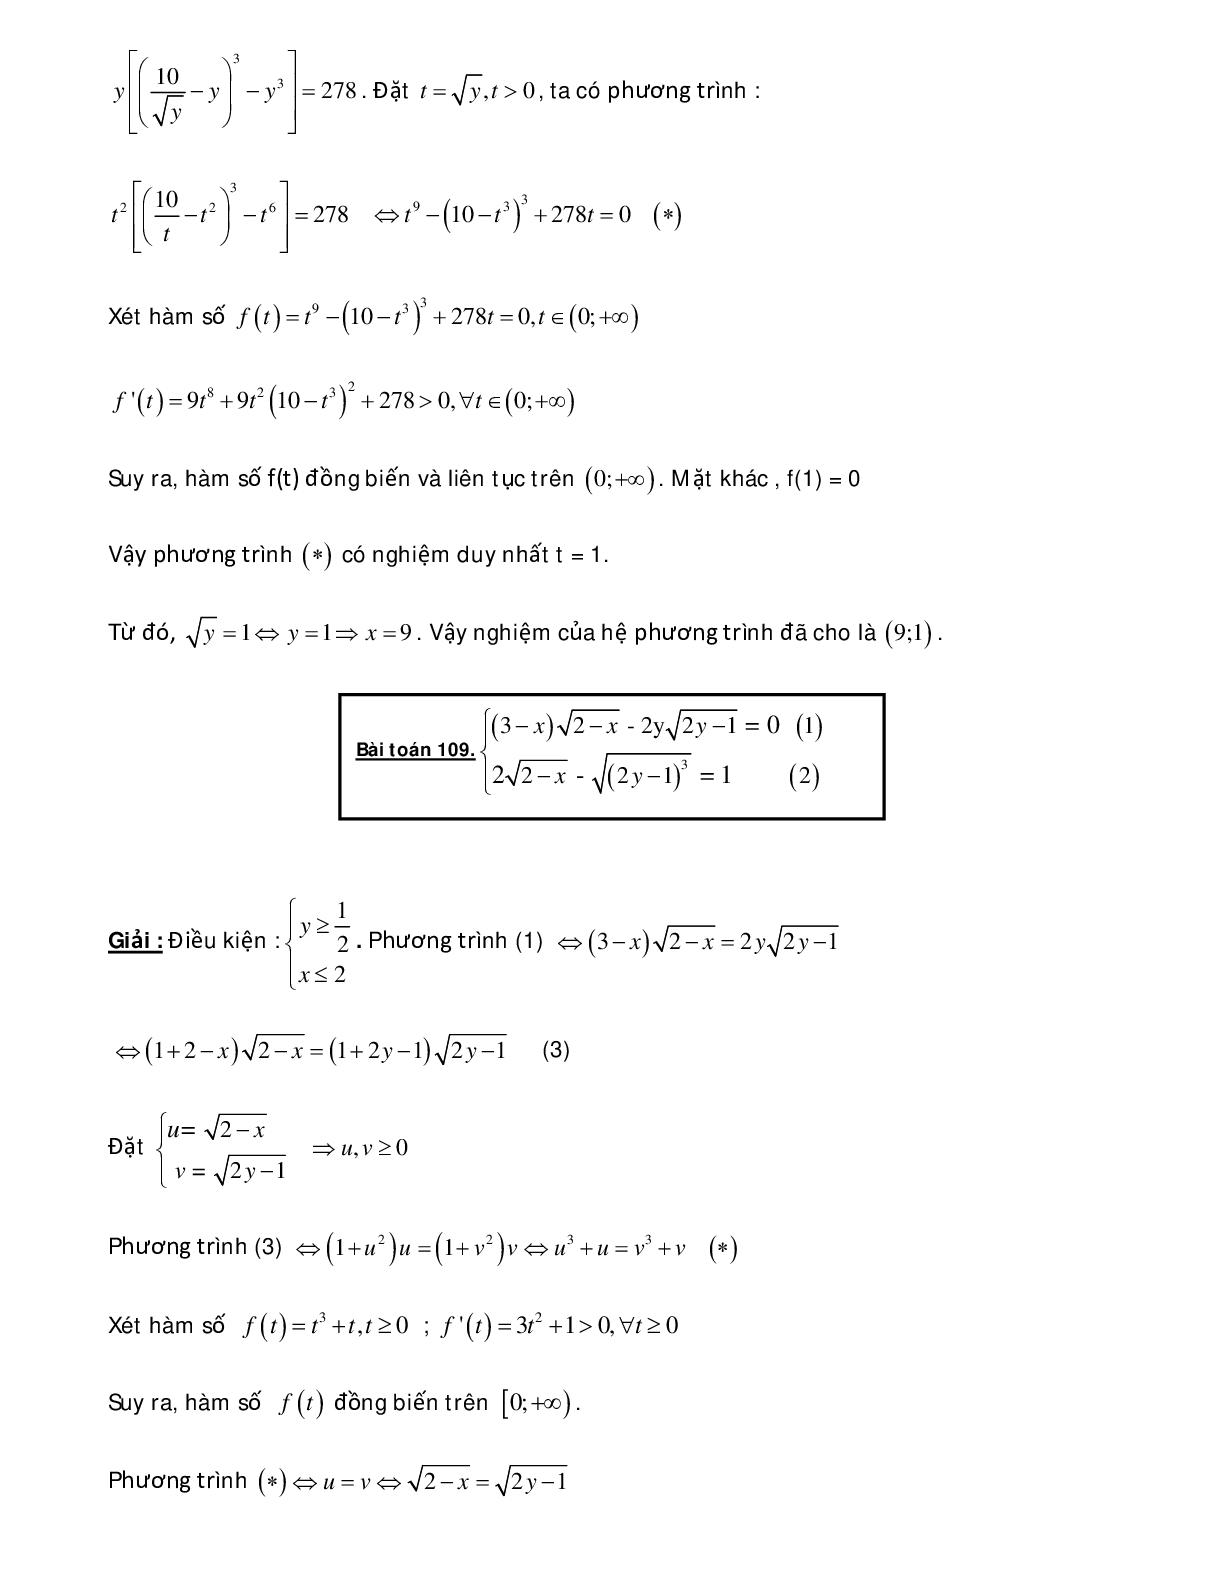 Bài tập sử dụng phương pháp hàm số để giải hệ phương trình - có đáp án chi tiết (trang 7)